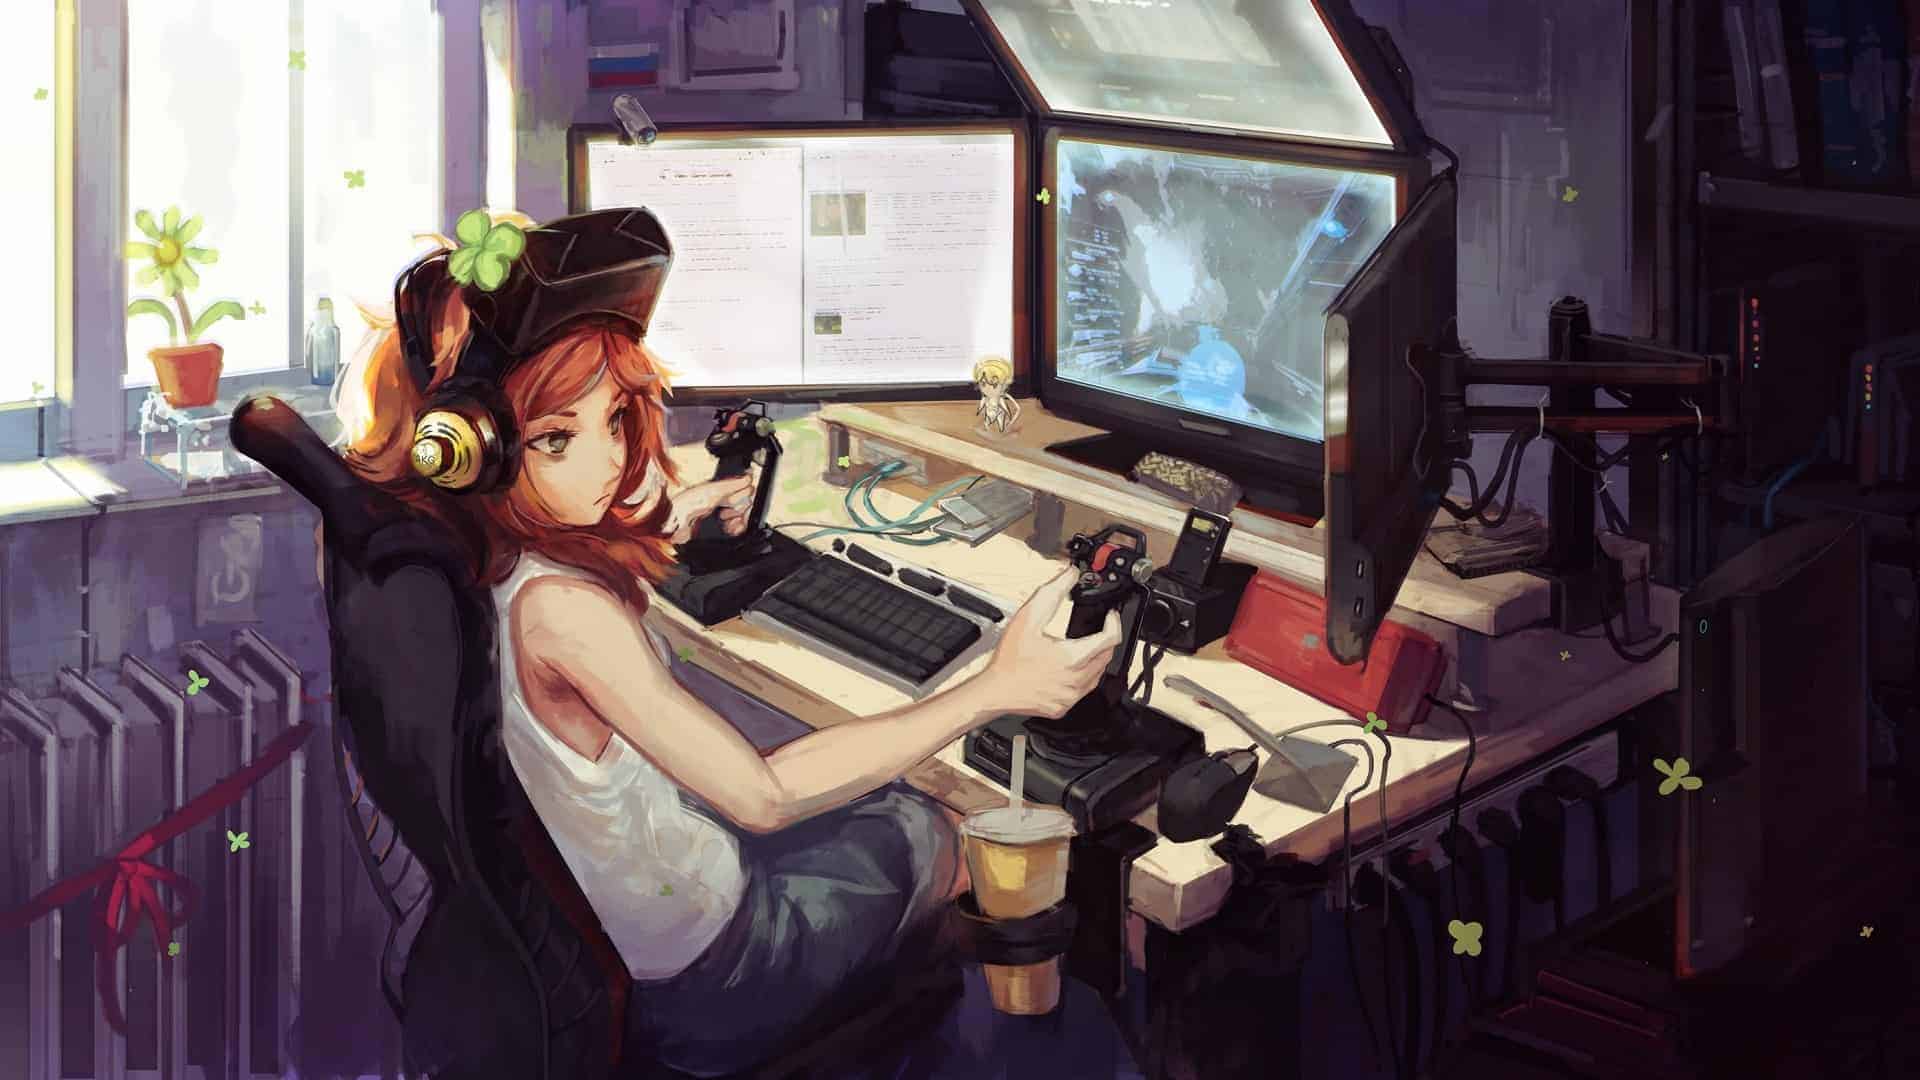 Anime gamer girl 10 Video